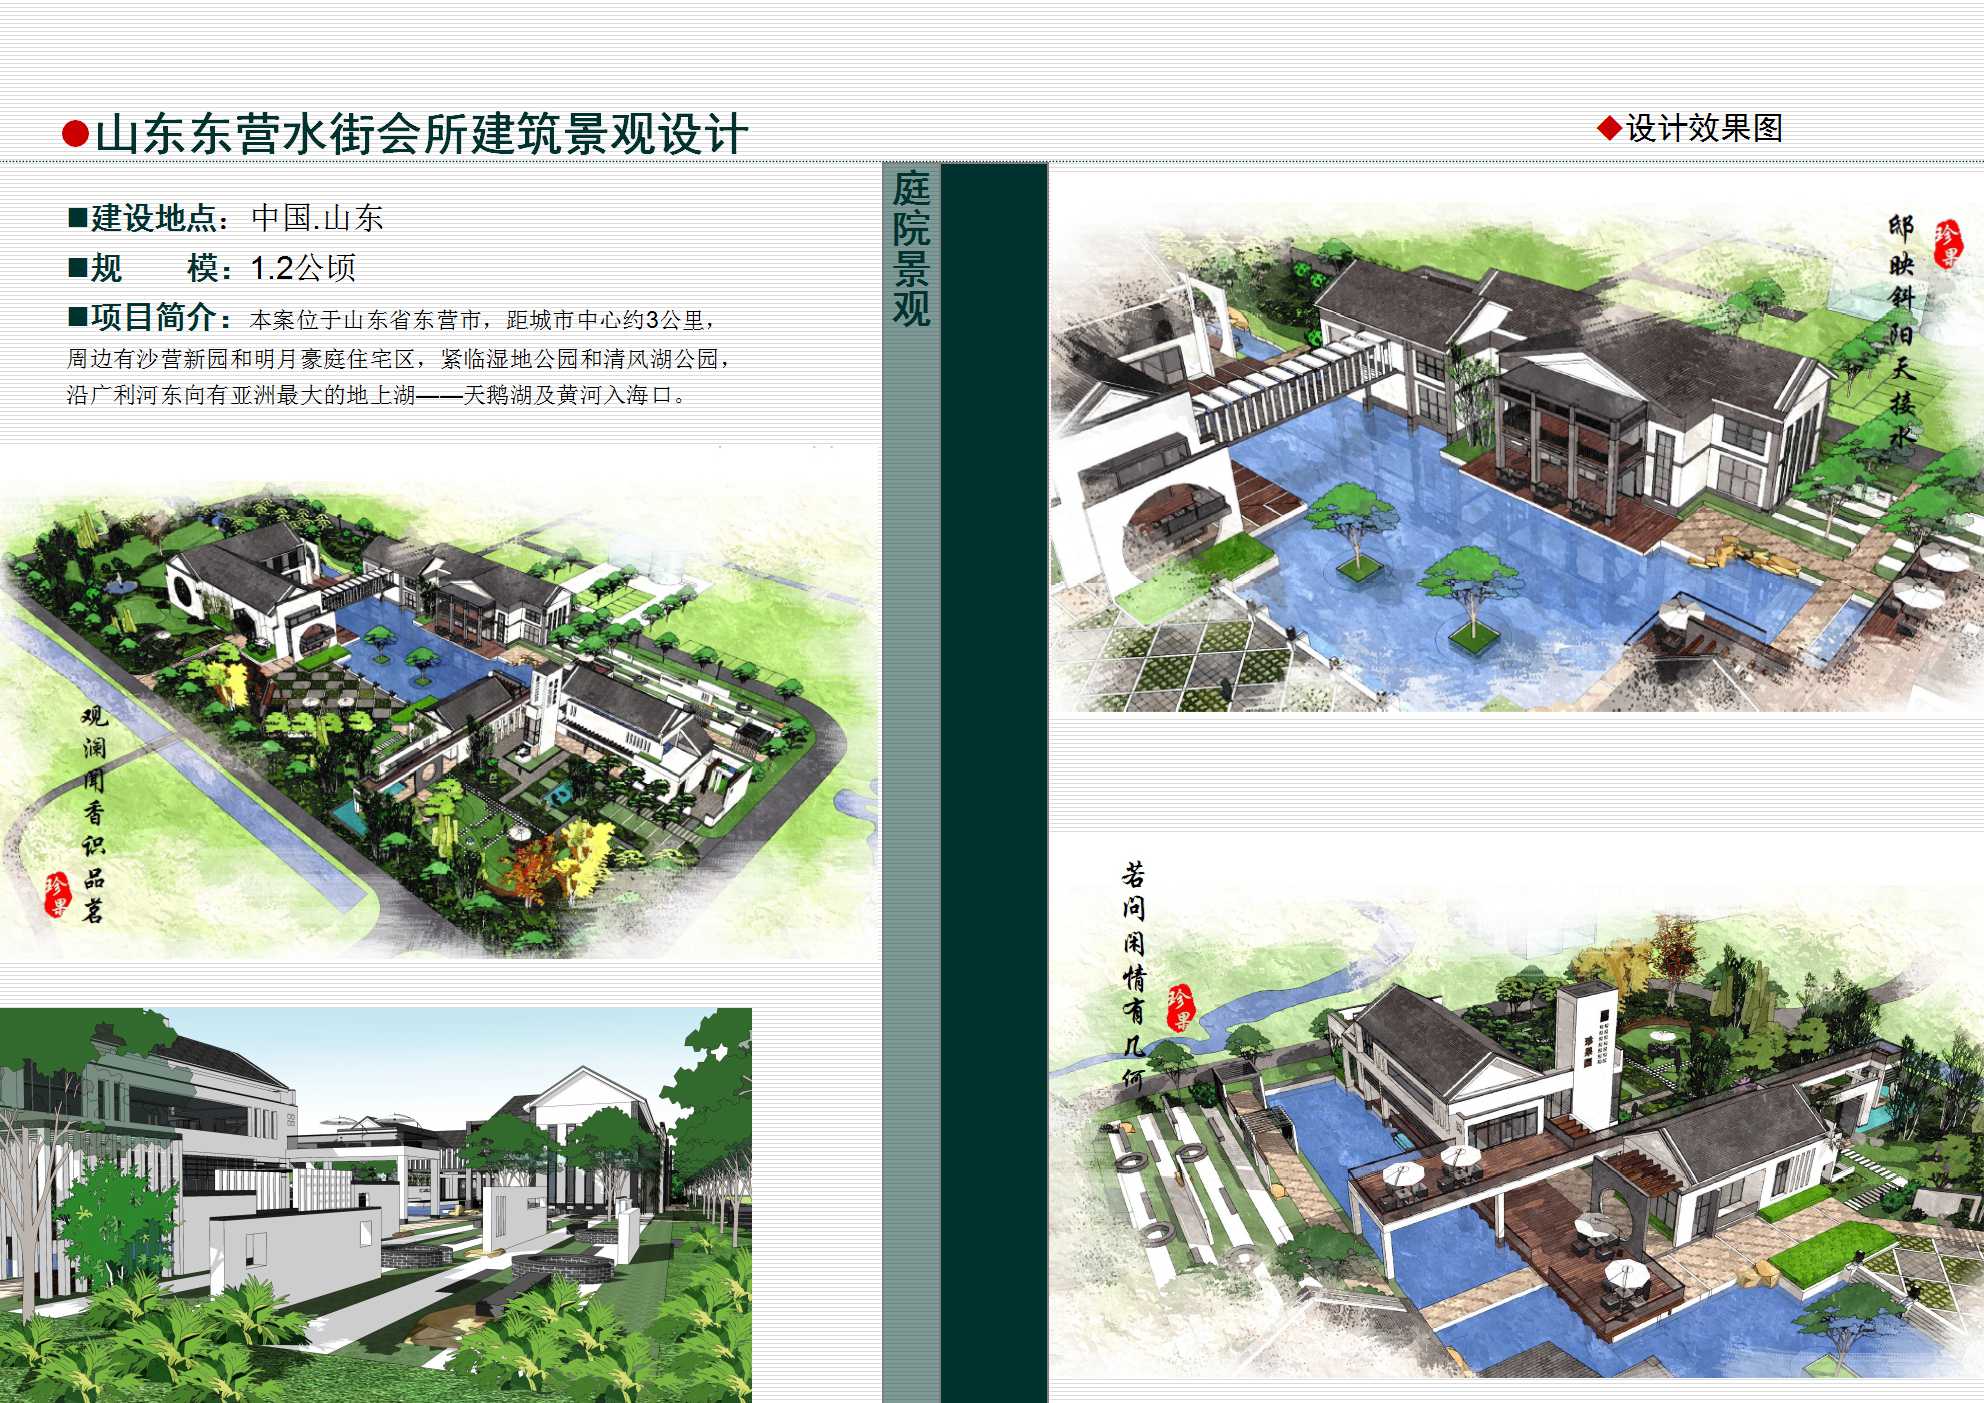 上海格润景观设计有限公司